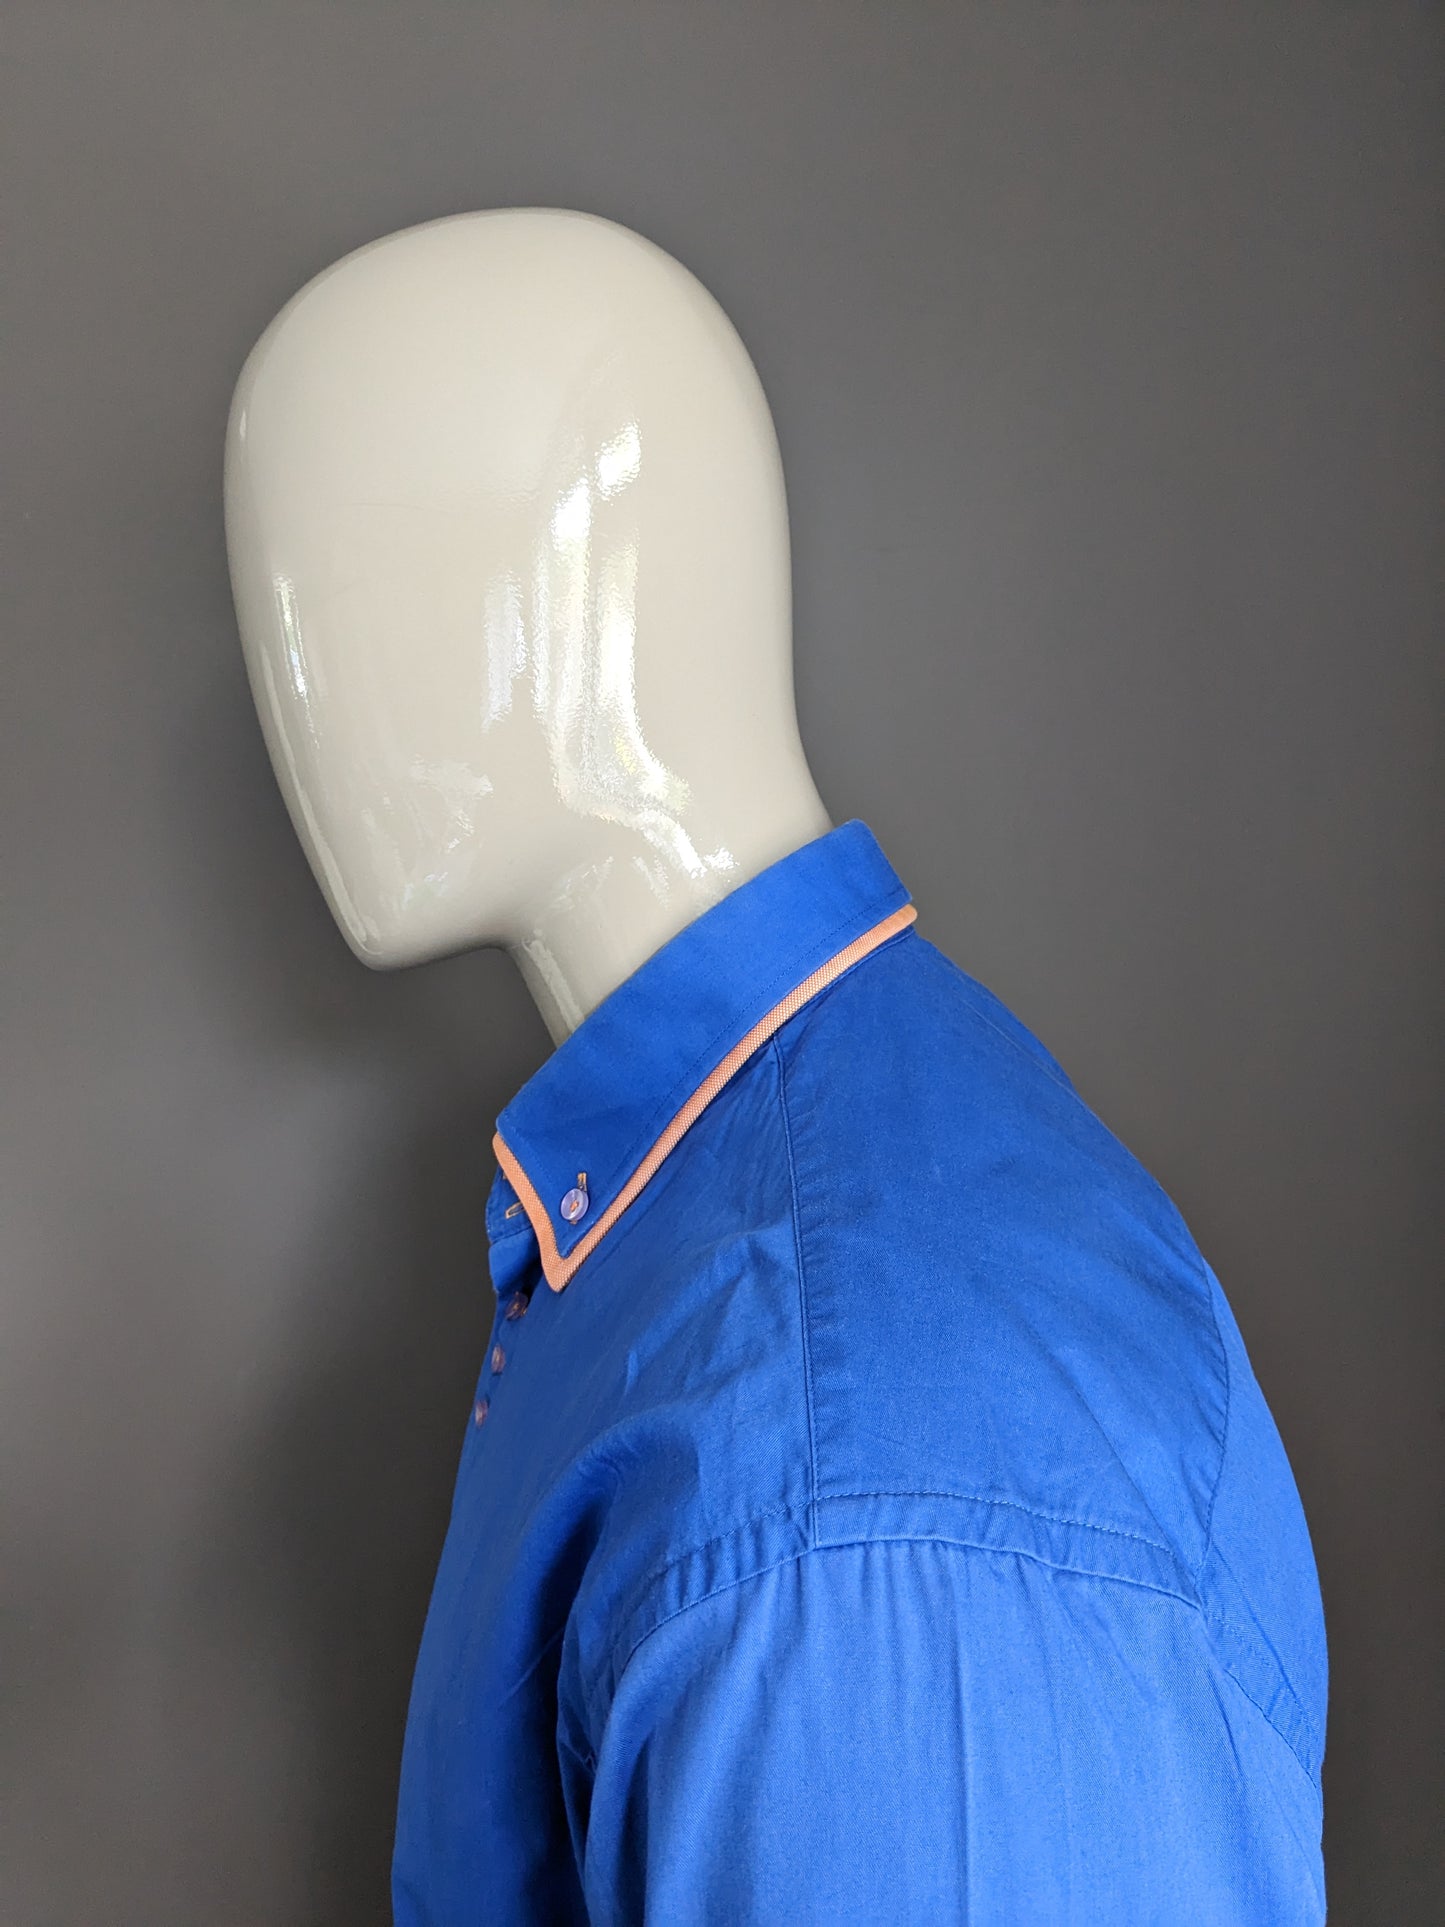 WAM Denim -Hemd mit Doppelkragen. Blau orangefarben. Größe xl.